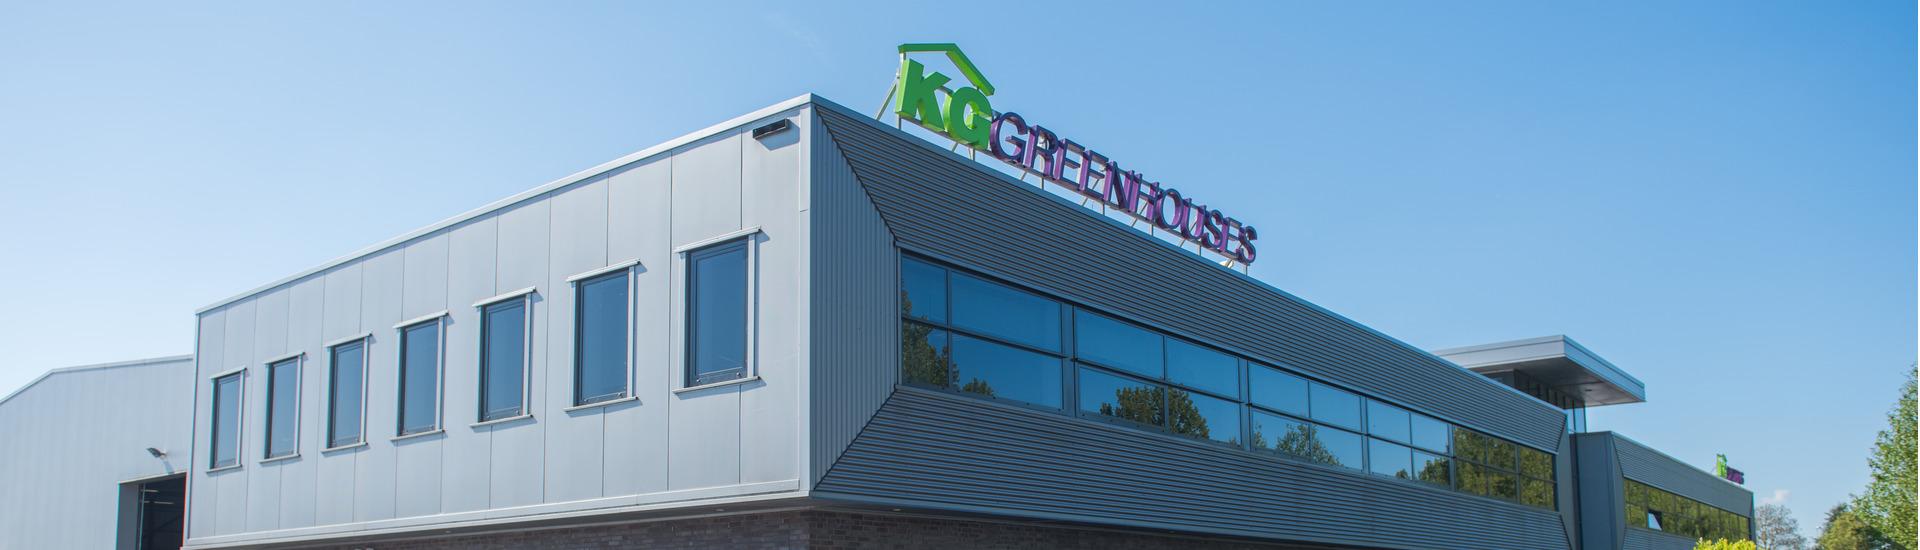 KG Greenhouses ist ein weltweit aktiver Spezialist für Turnkey-Projekte im Unterglasanbau